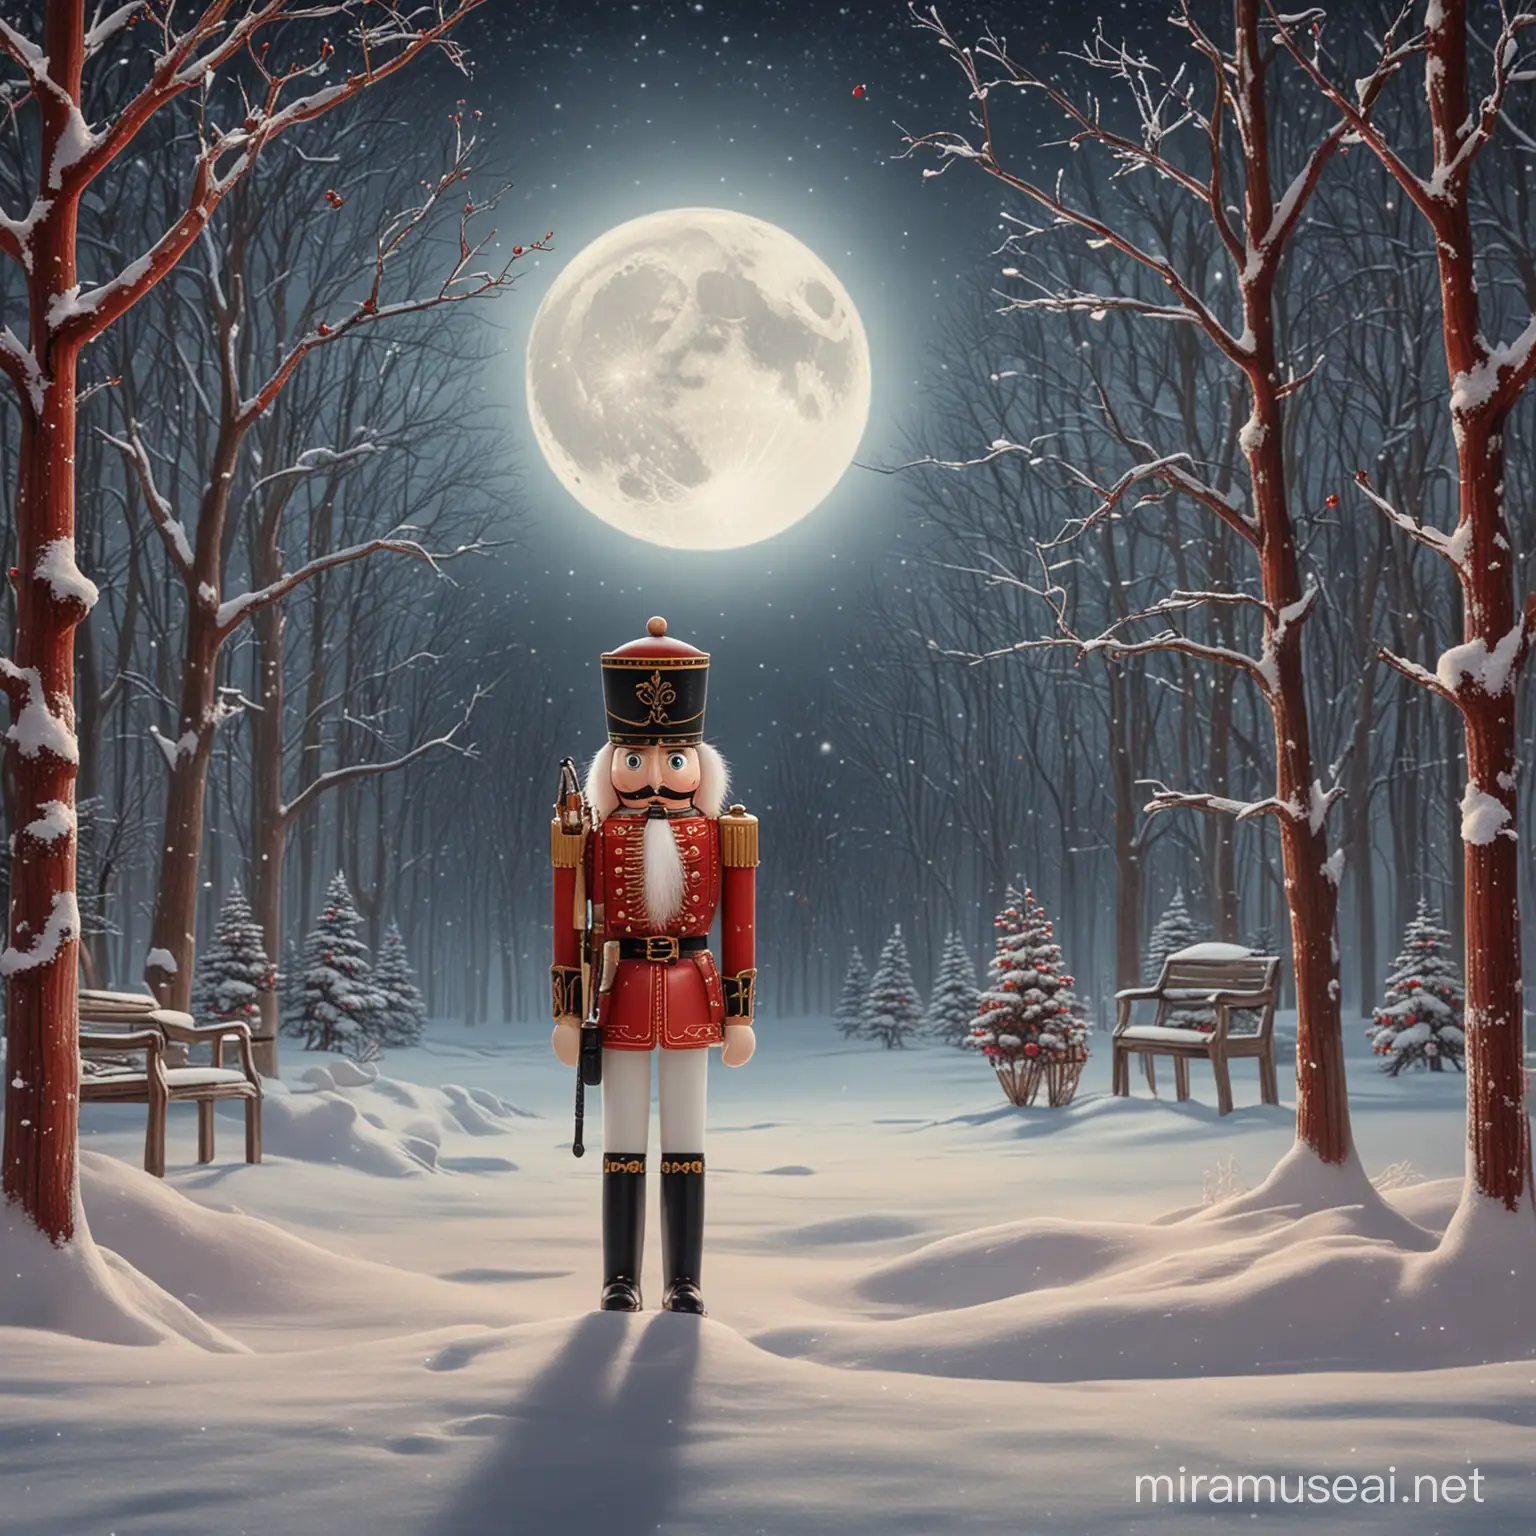 Red Nutcracker Under Moonlight on a Winter Night